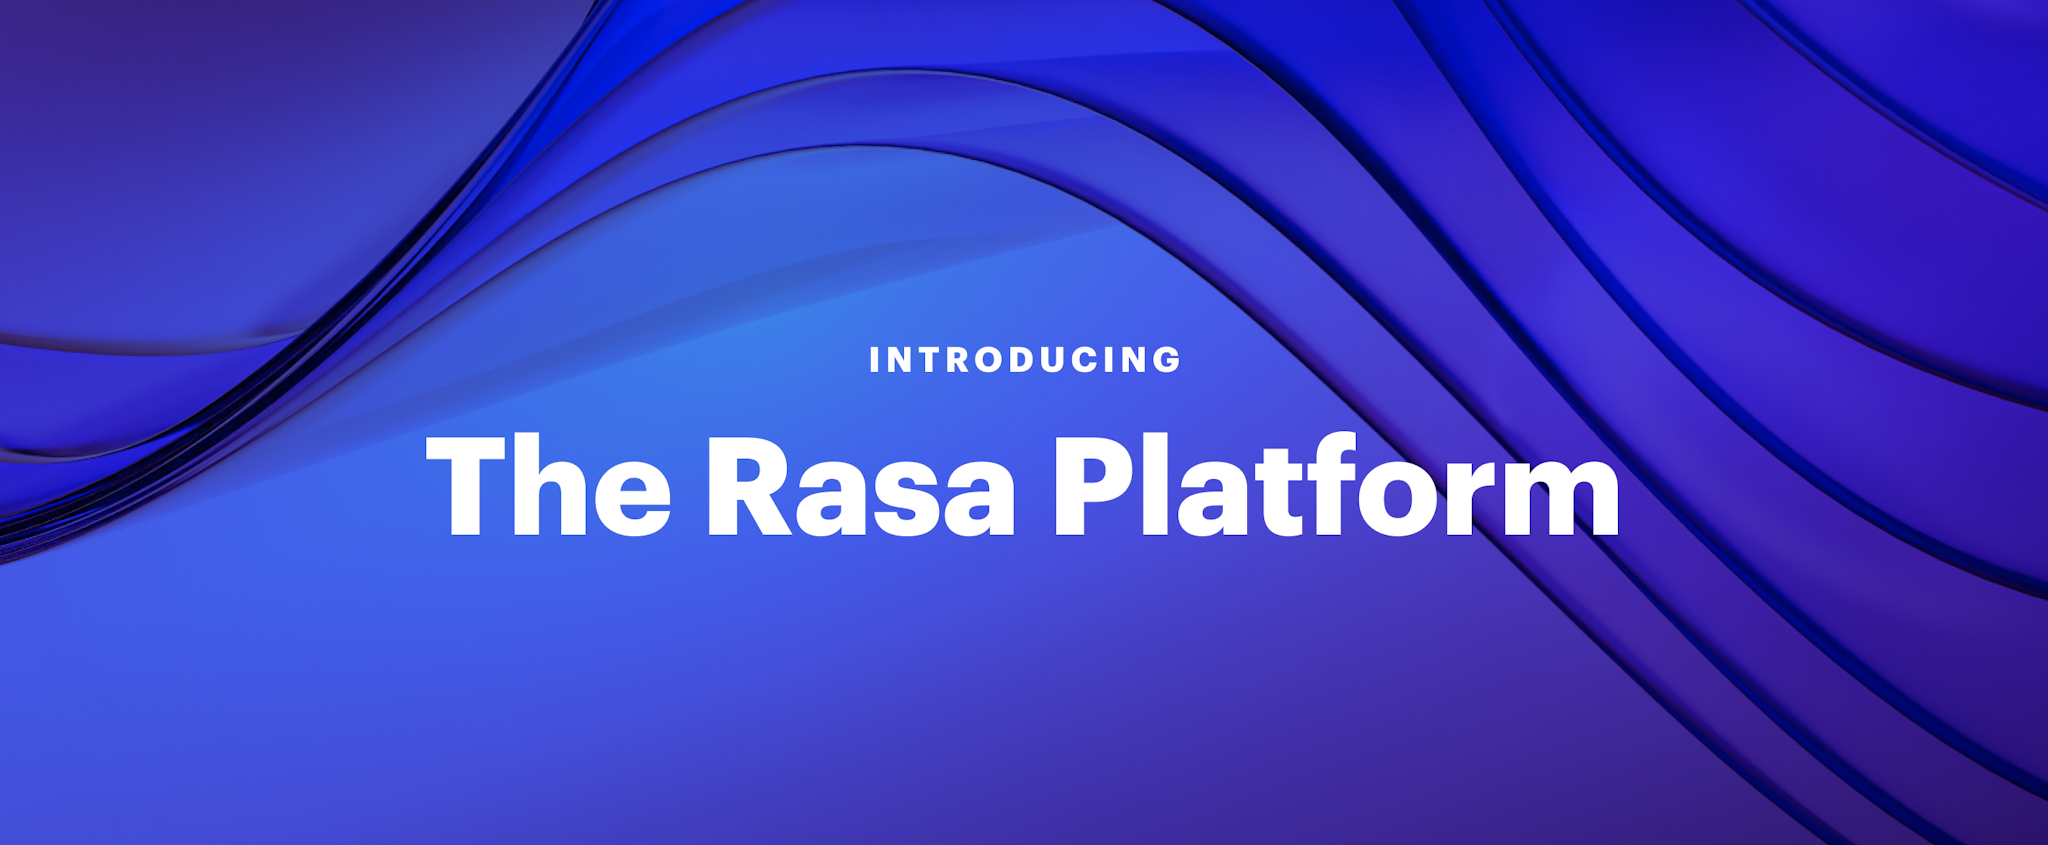 Introducing the Rasa Platform